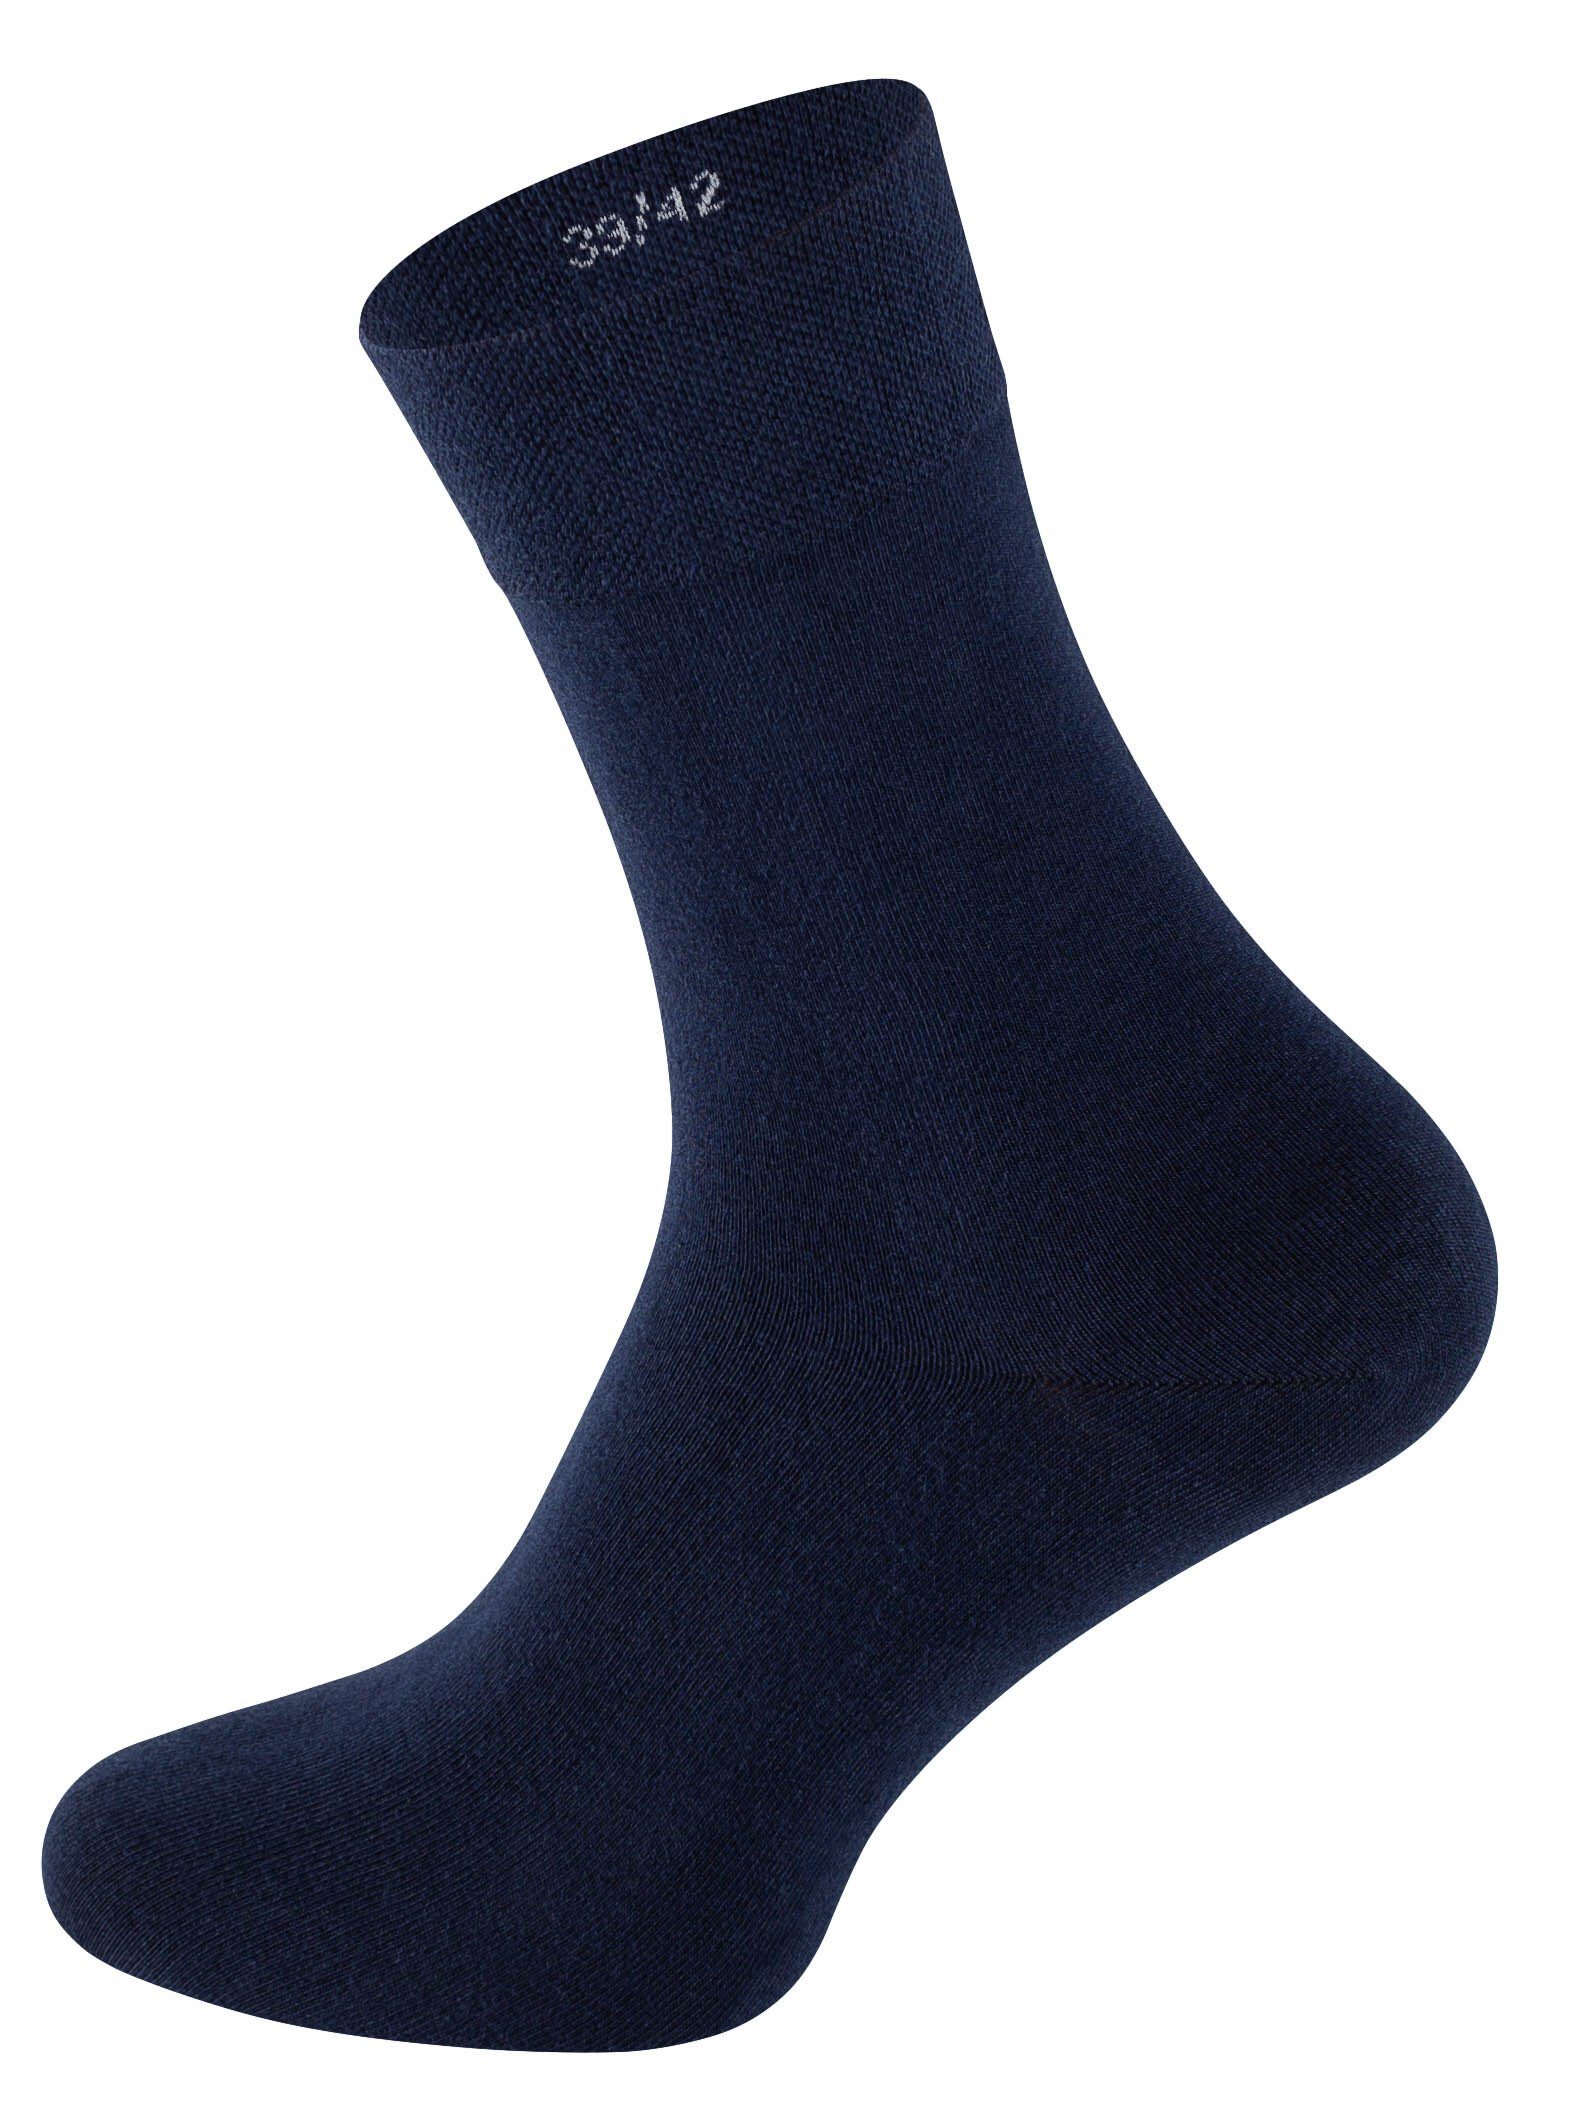 Marineblau (6-Paar) Socken Baumwollqualität in angenehmer Crown® Clark